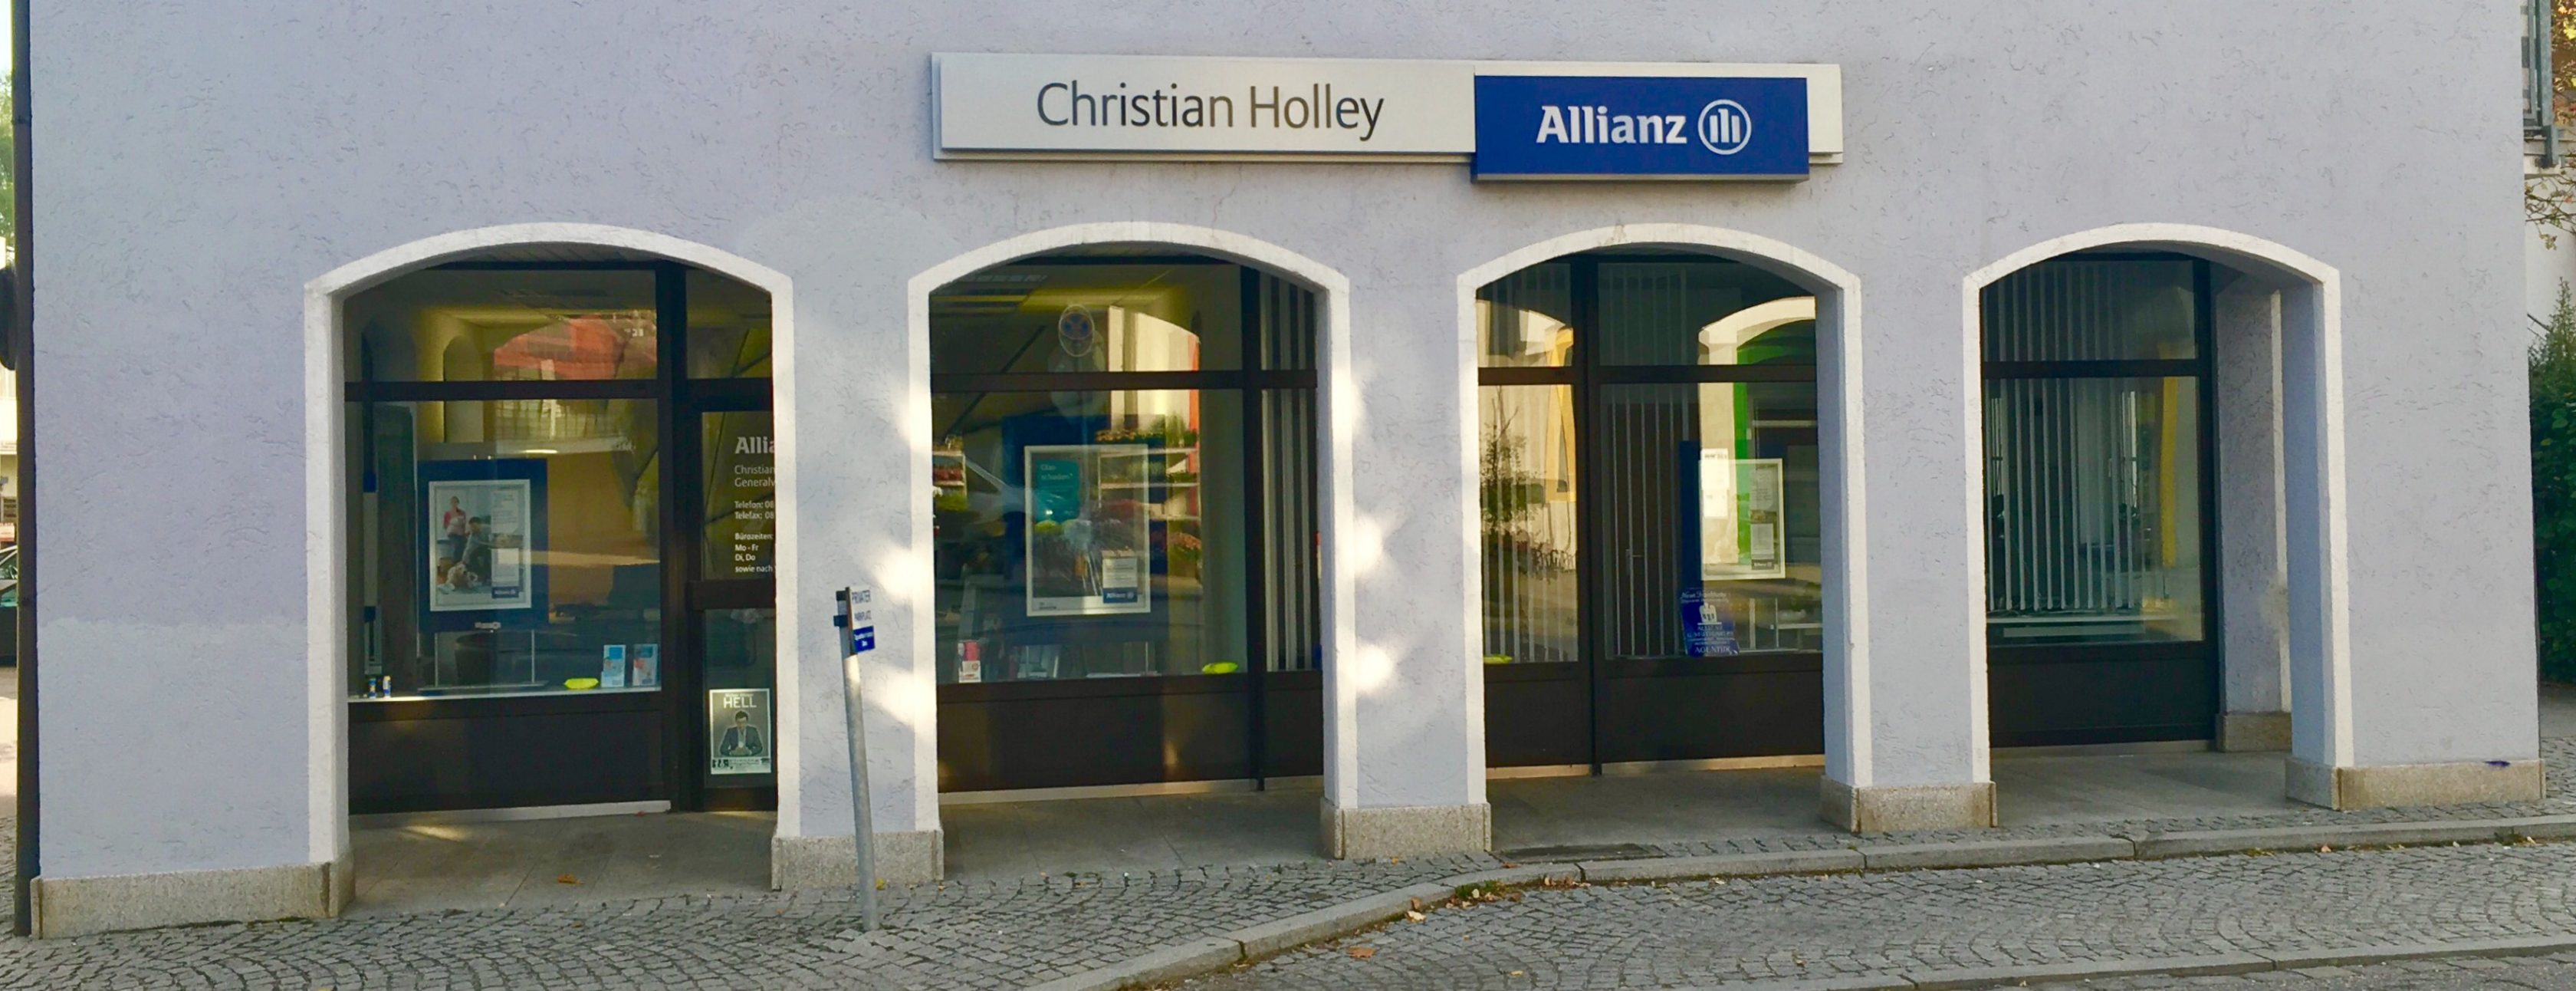 Allianz Versicherung Christian Holley Markt Schwaben - Willkommen in unserem Allianz Büro